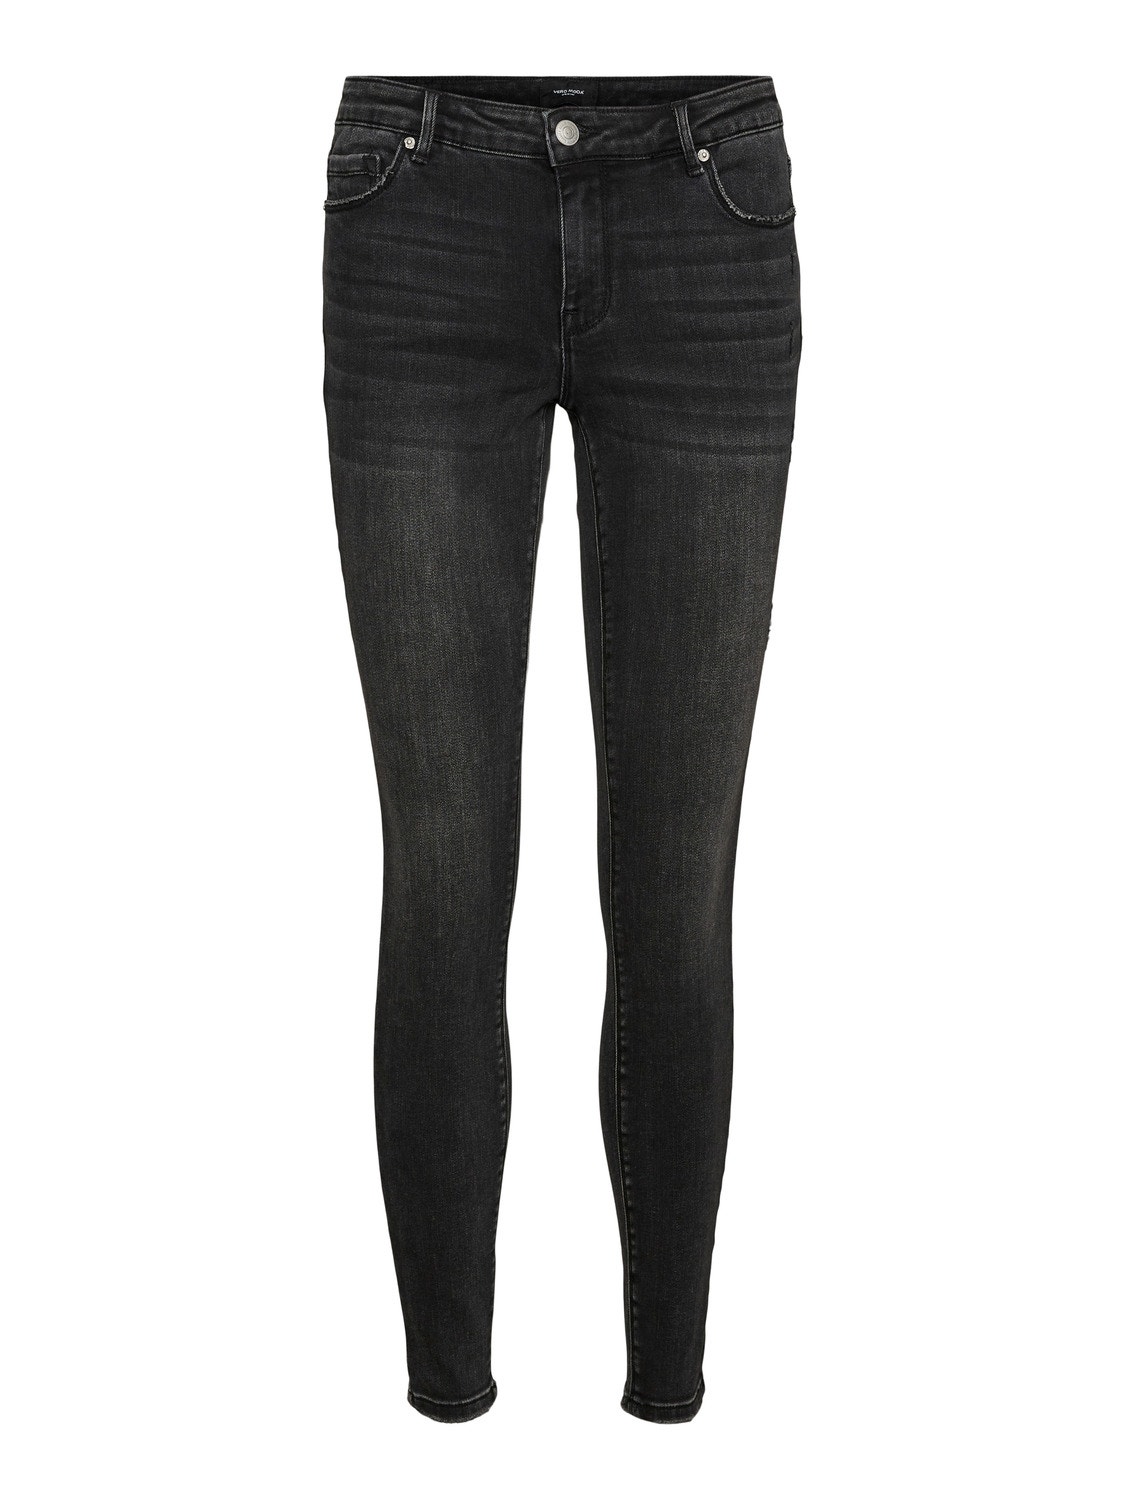 Vero Moda VMLYDIA Skinny Fit Jeans -Black - 10269729